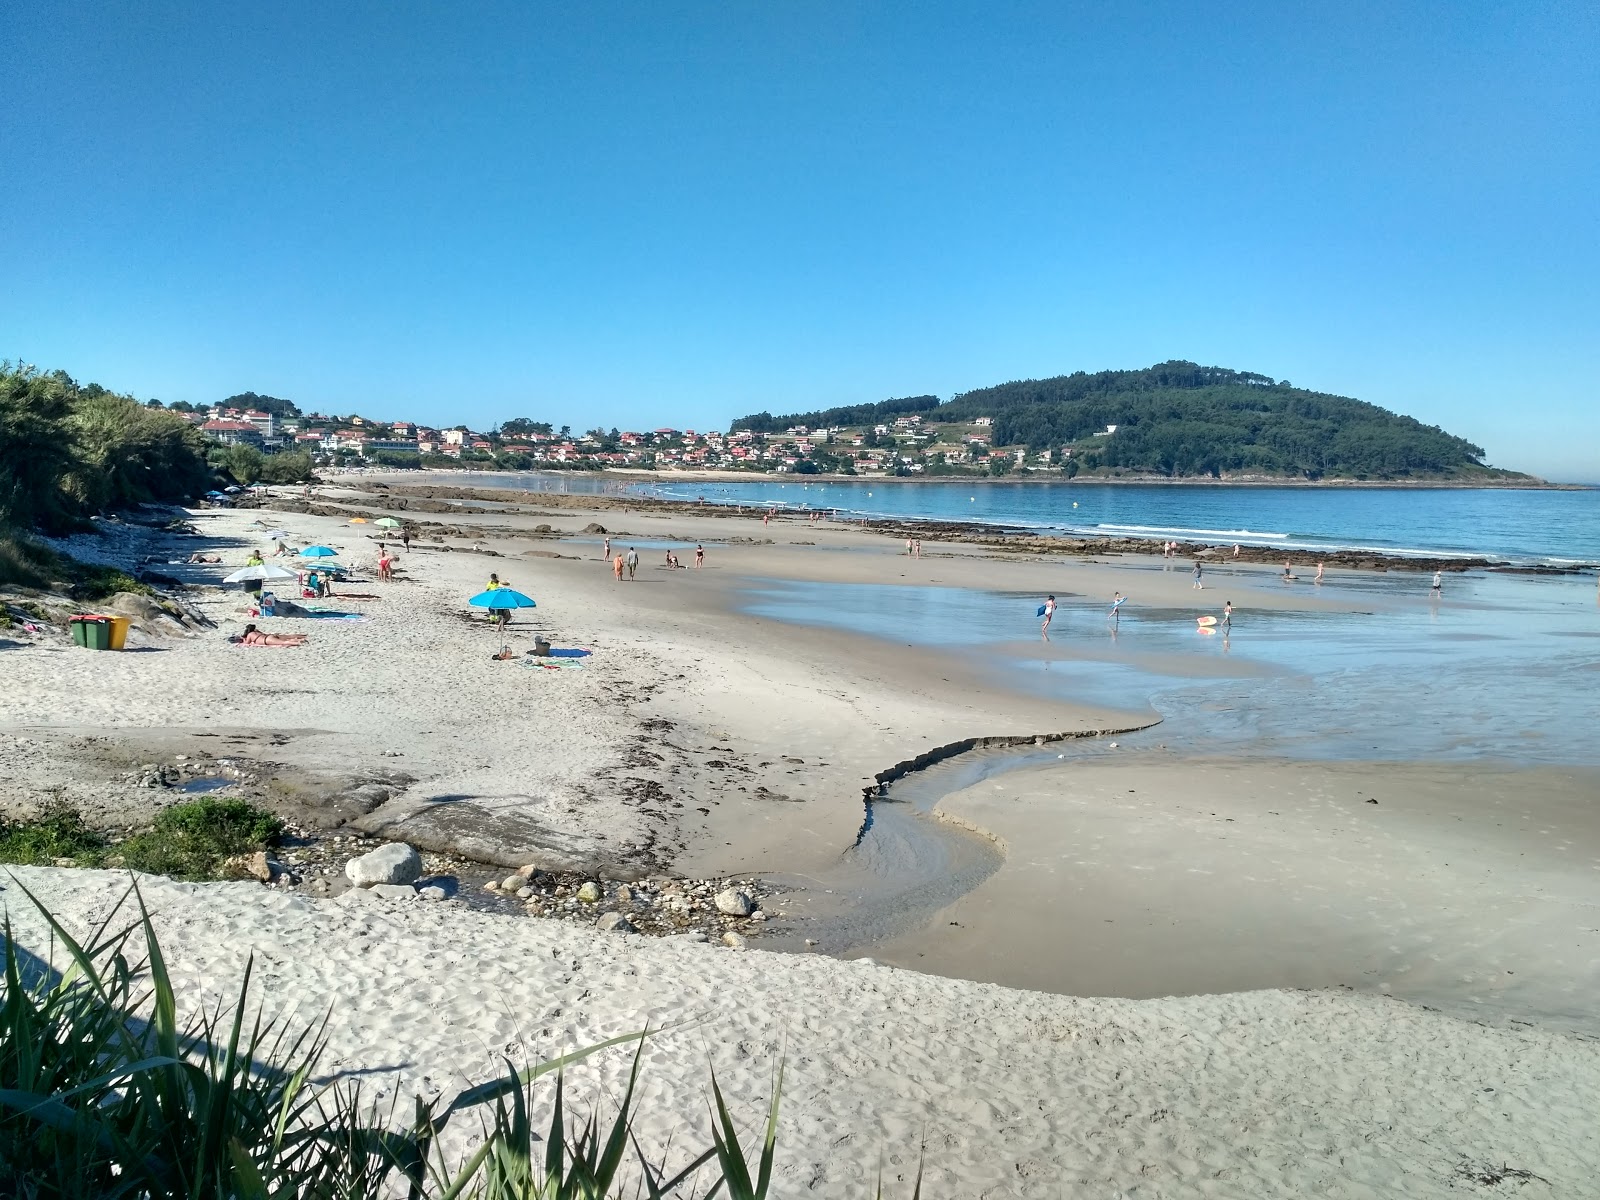 Praia de Patos'in fotoğrafı beyaz kum yüzey ile